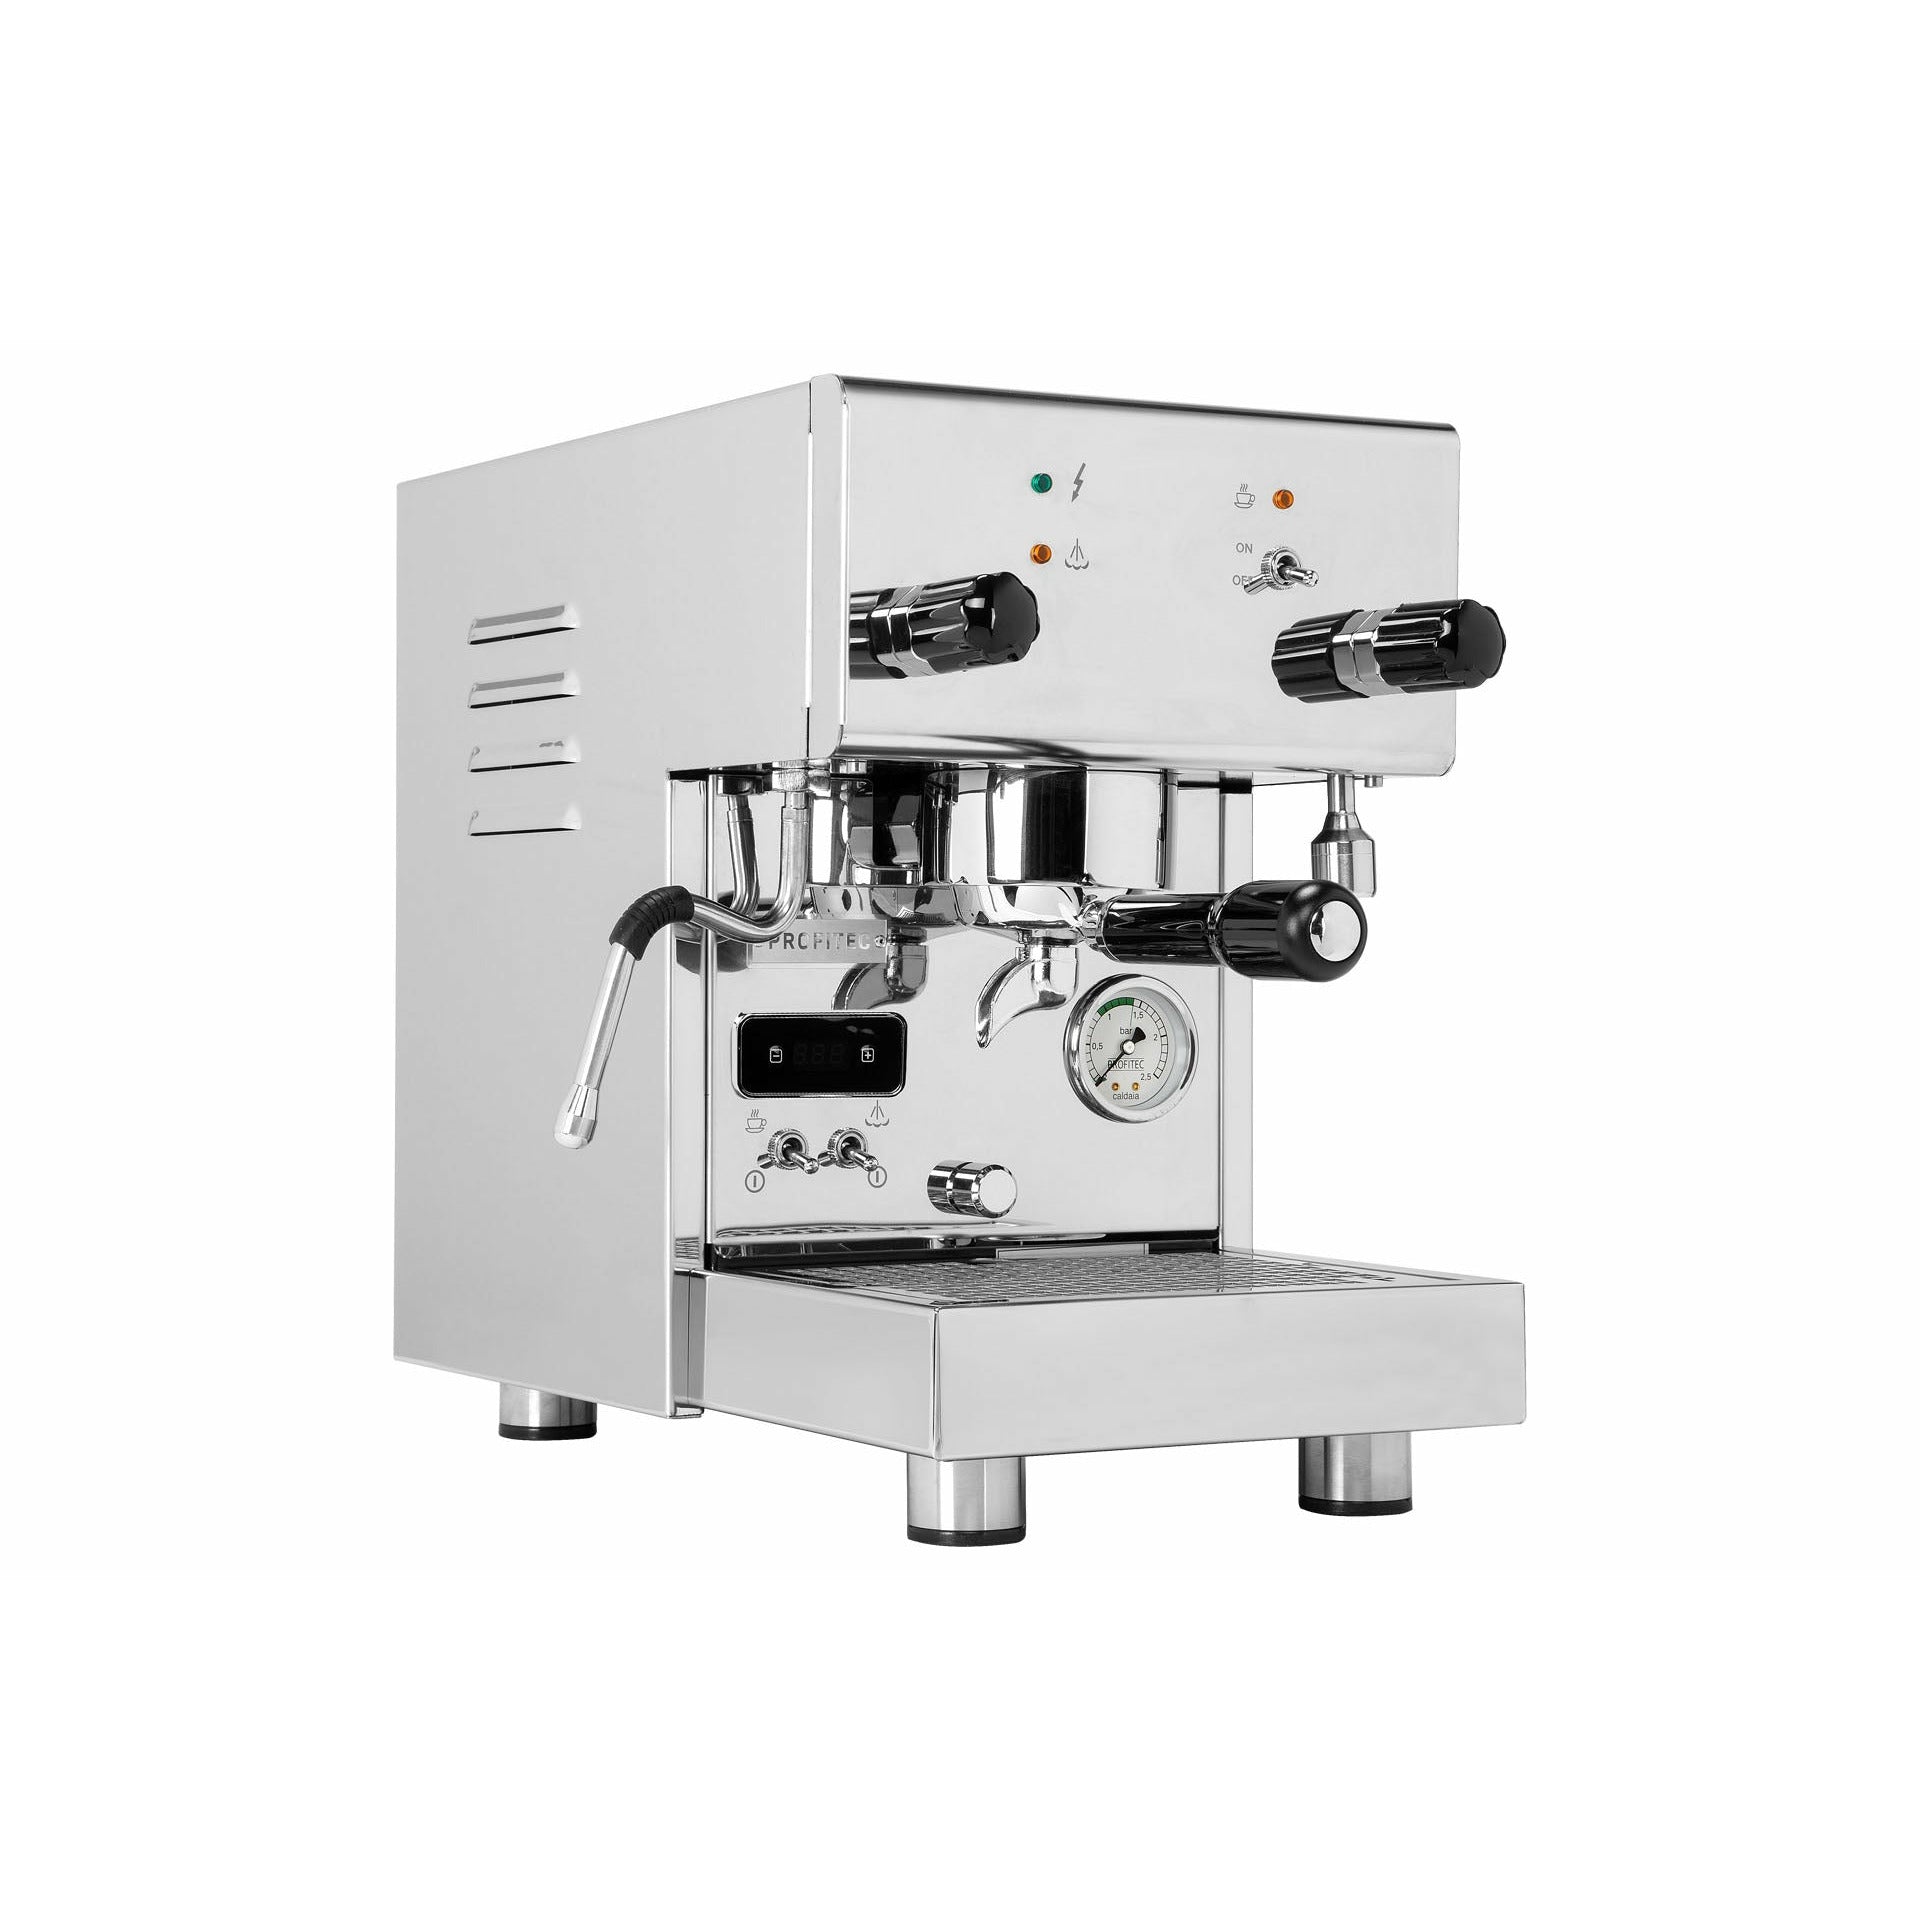 Profitec Pro 300 PID - Dualboiler Espressomaschine mit PID-Steuerung Espressomaschinen Profitec    - Rheinland.Coffee